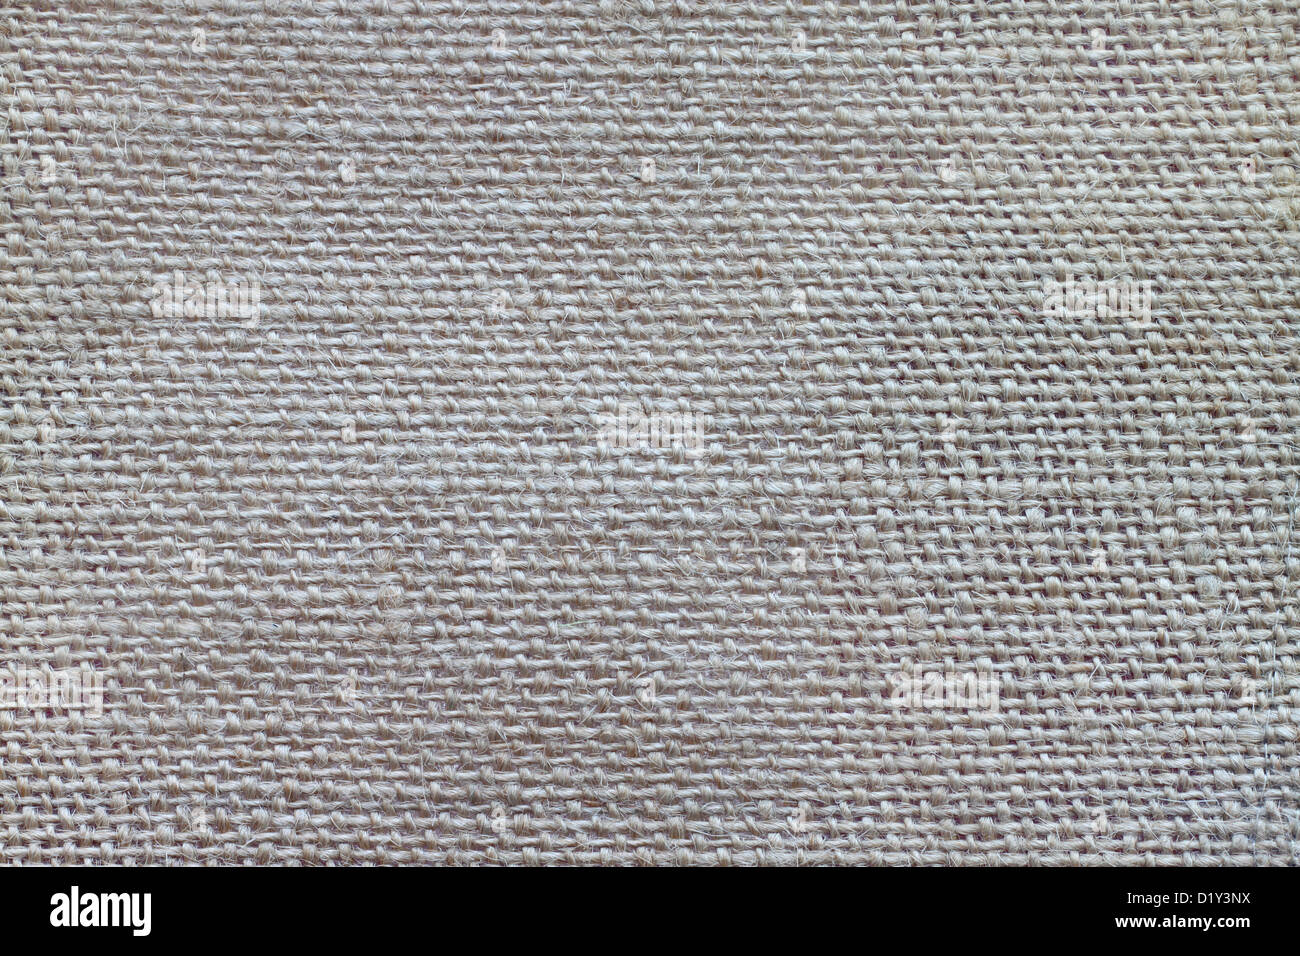 Textur von grobem Tuch von Jute Faser hergestellt Stockfoto